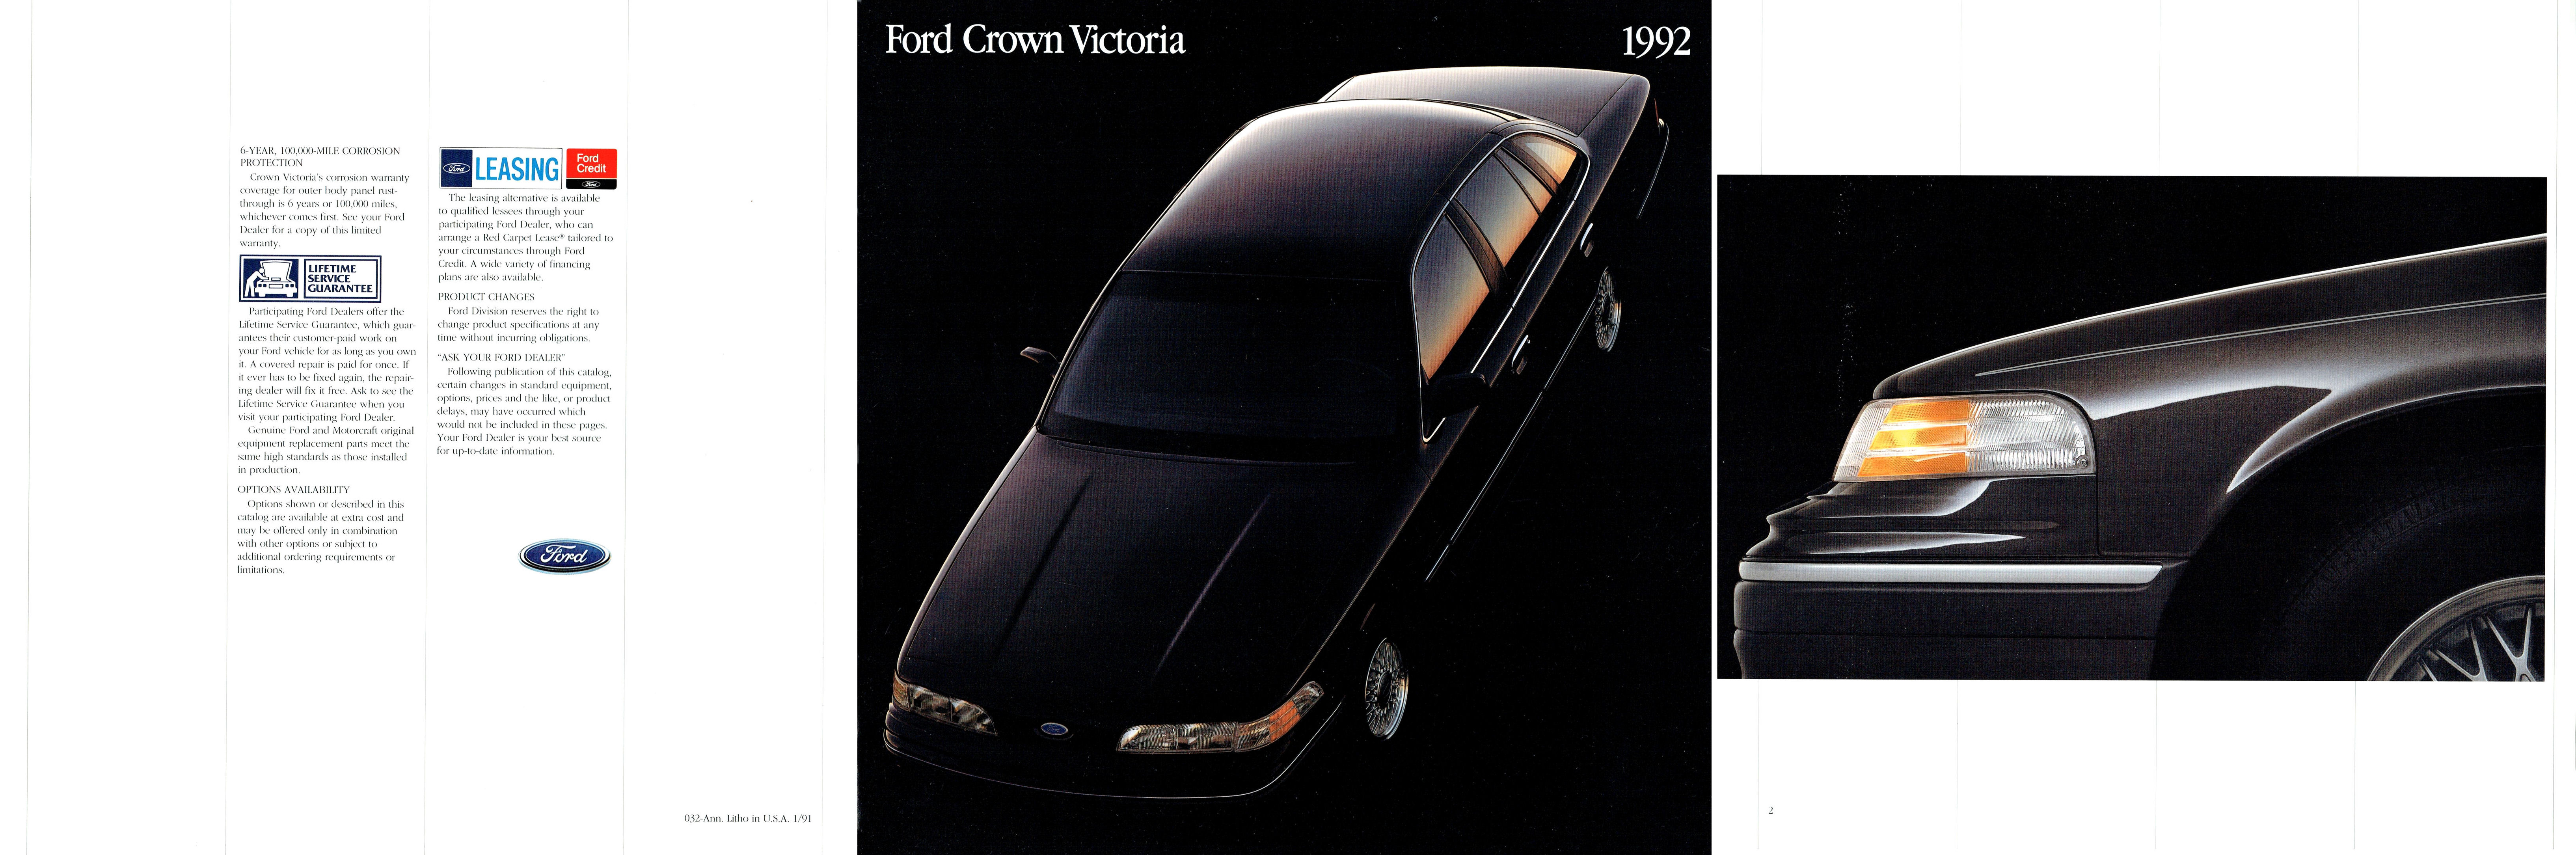 1992_Ford_Crown_Victoria_Prestige-22-01-02